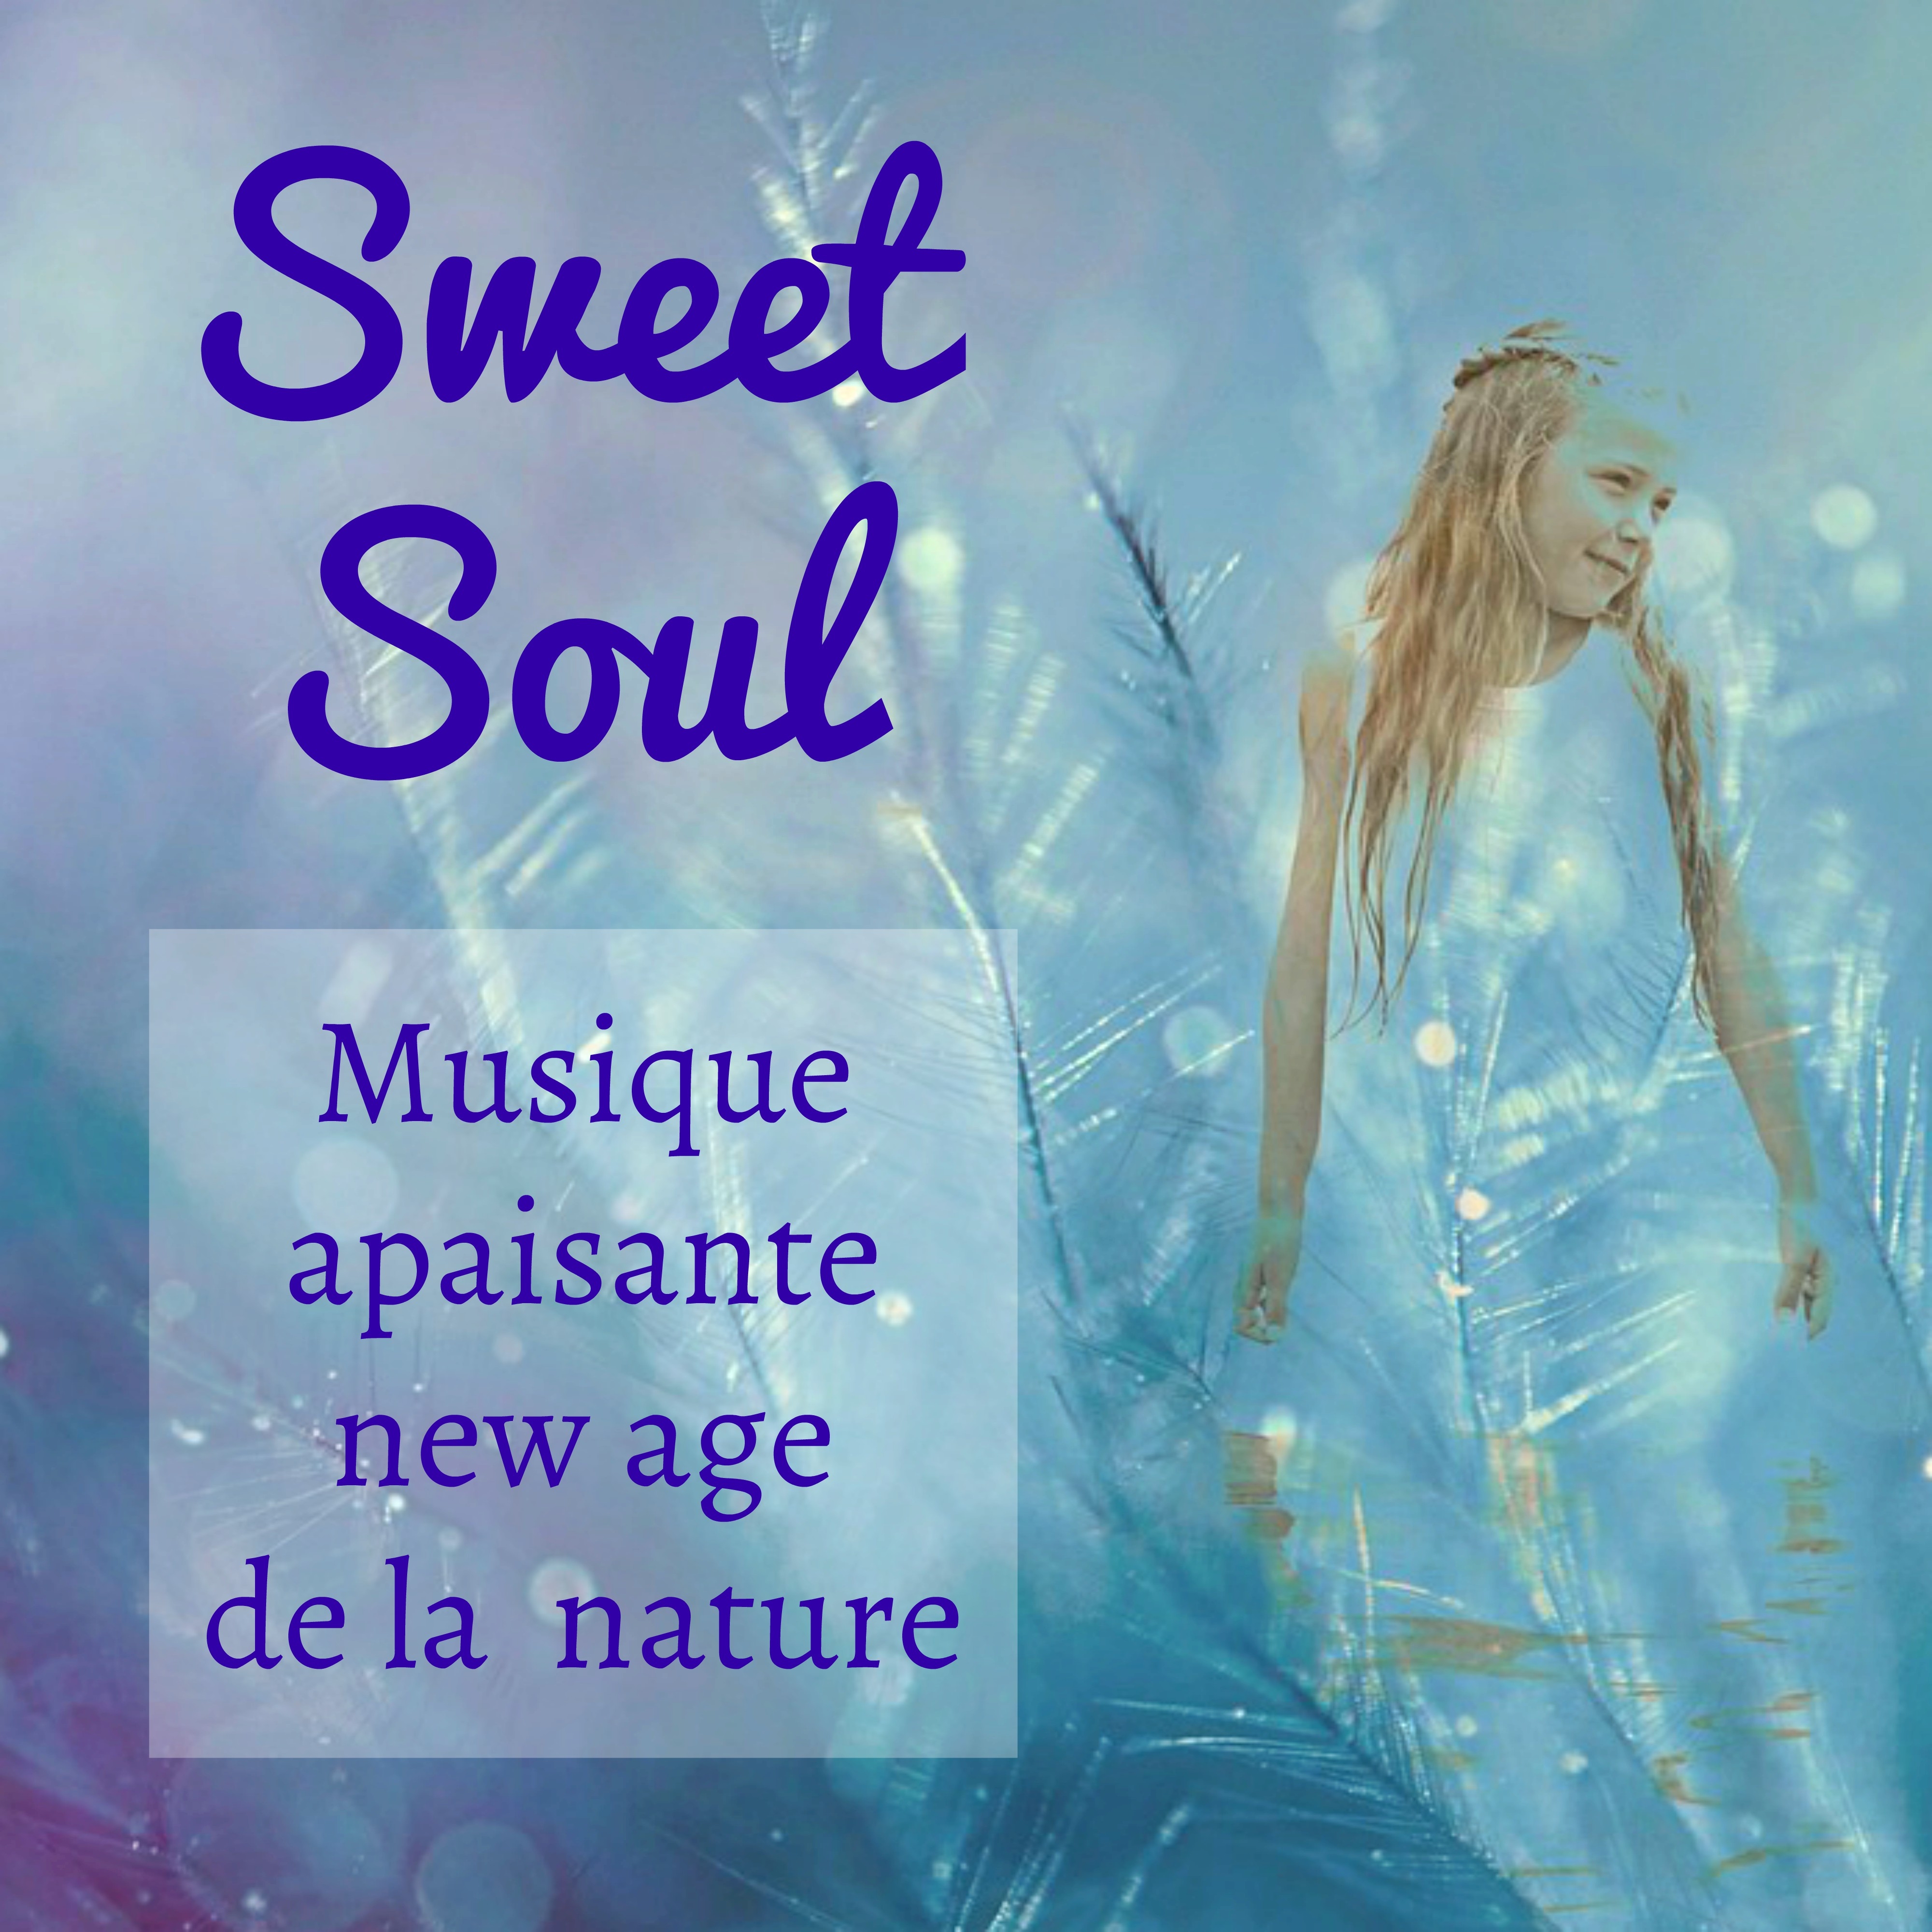 Sweet Soul  Musique apaisante new age de la nature pour exercice mental belle esprit chakras reiki avec sons instrumentaux de gue rison spirituelle